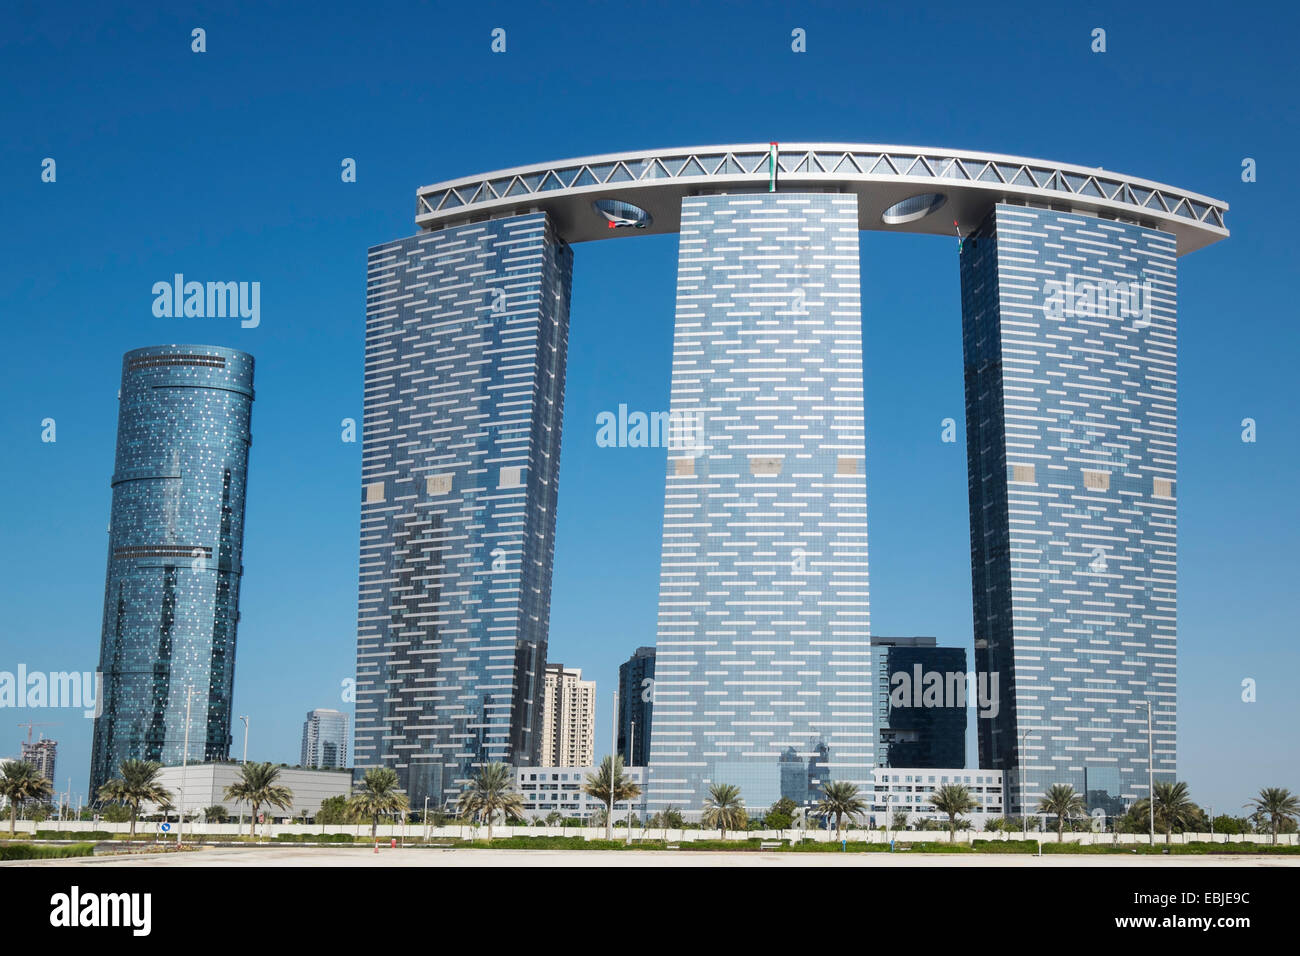 Des tours d'habitation modernes et des immeubles de bureaux, la Tour de la porte sur la droite, en construction sur Al Reem Island à Abu Dhabi ÉMIRATS ARABES UNIS Banque D'Images